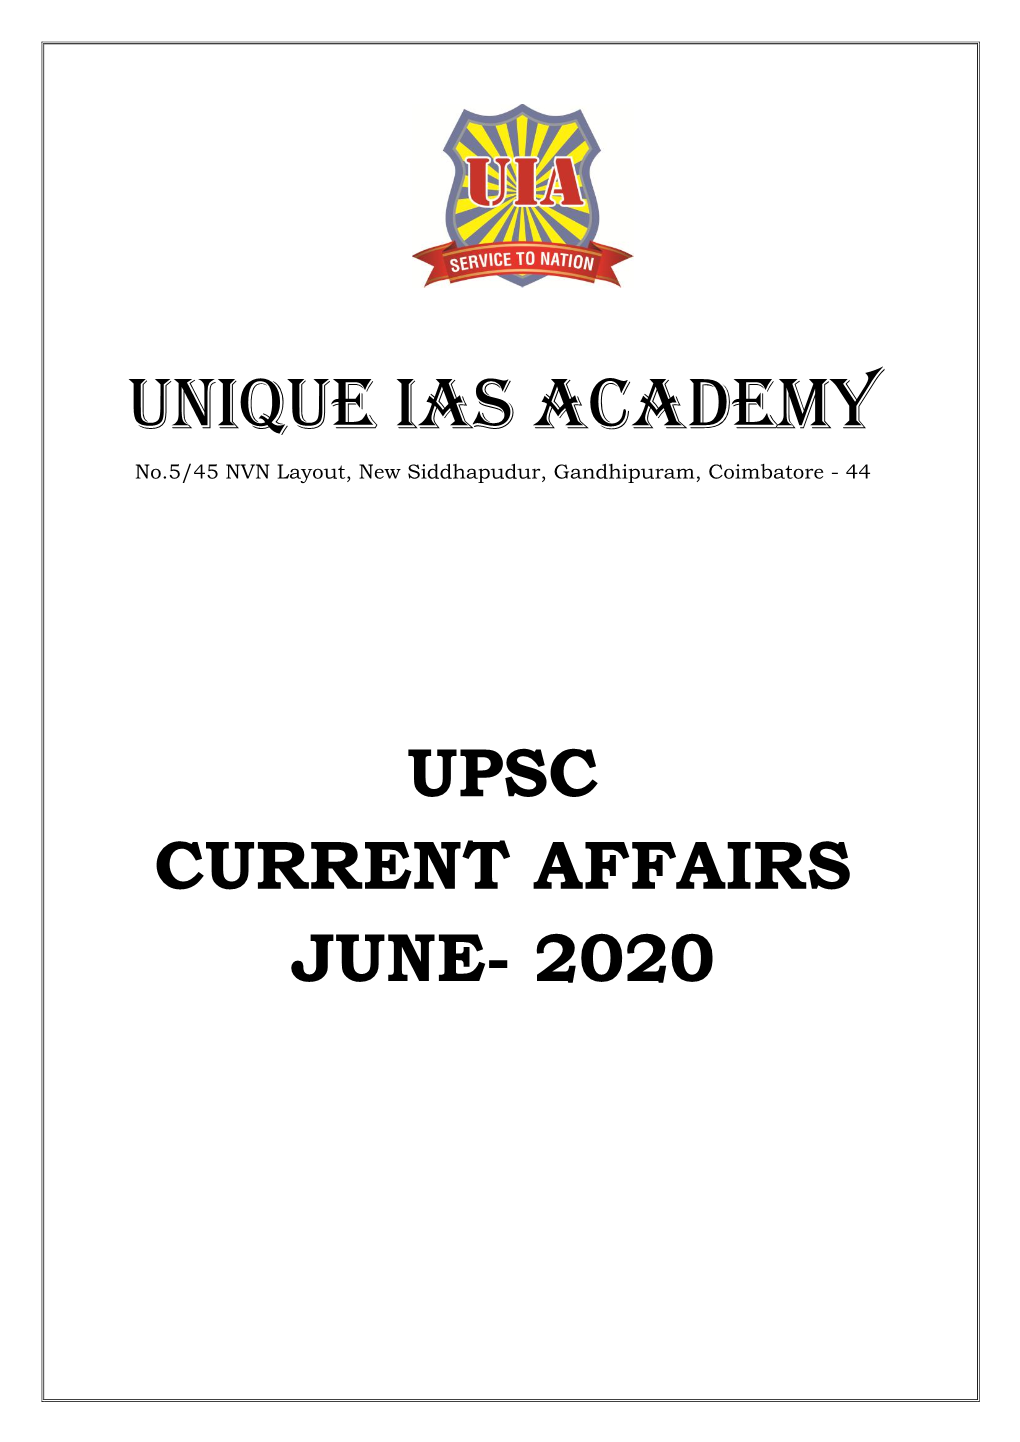 Upsc Current Affairs June- 2020